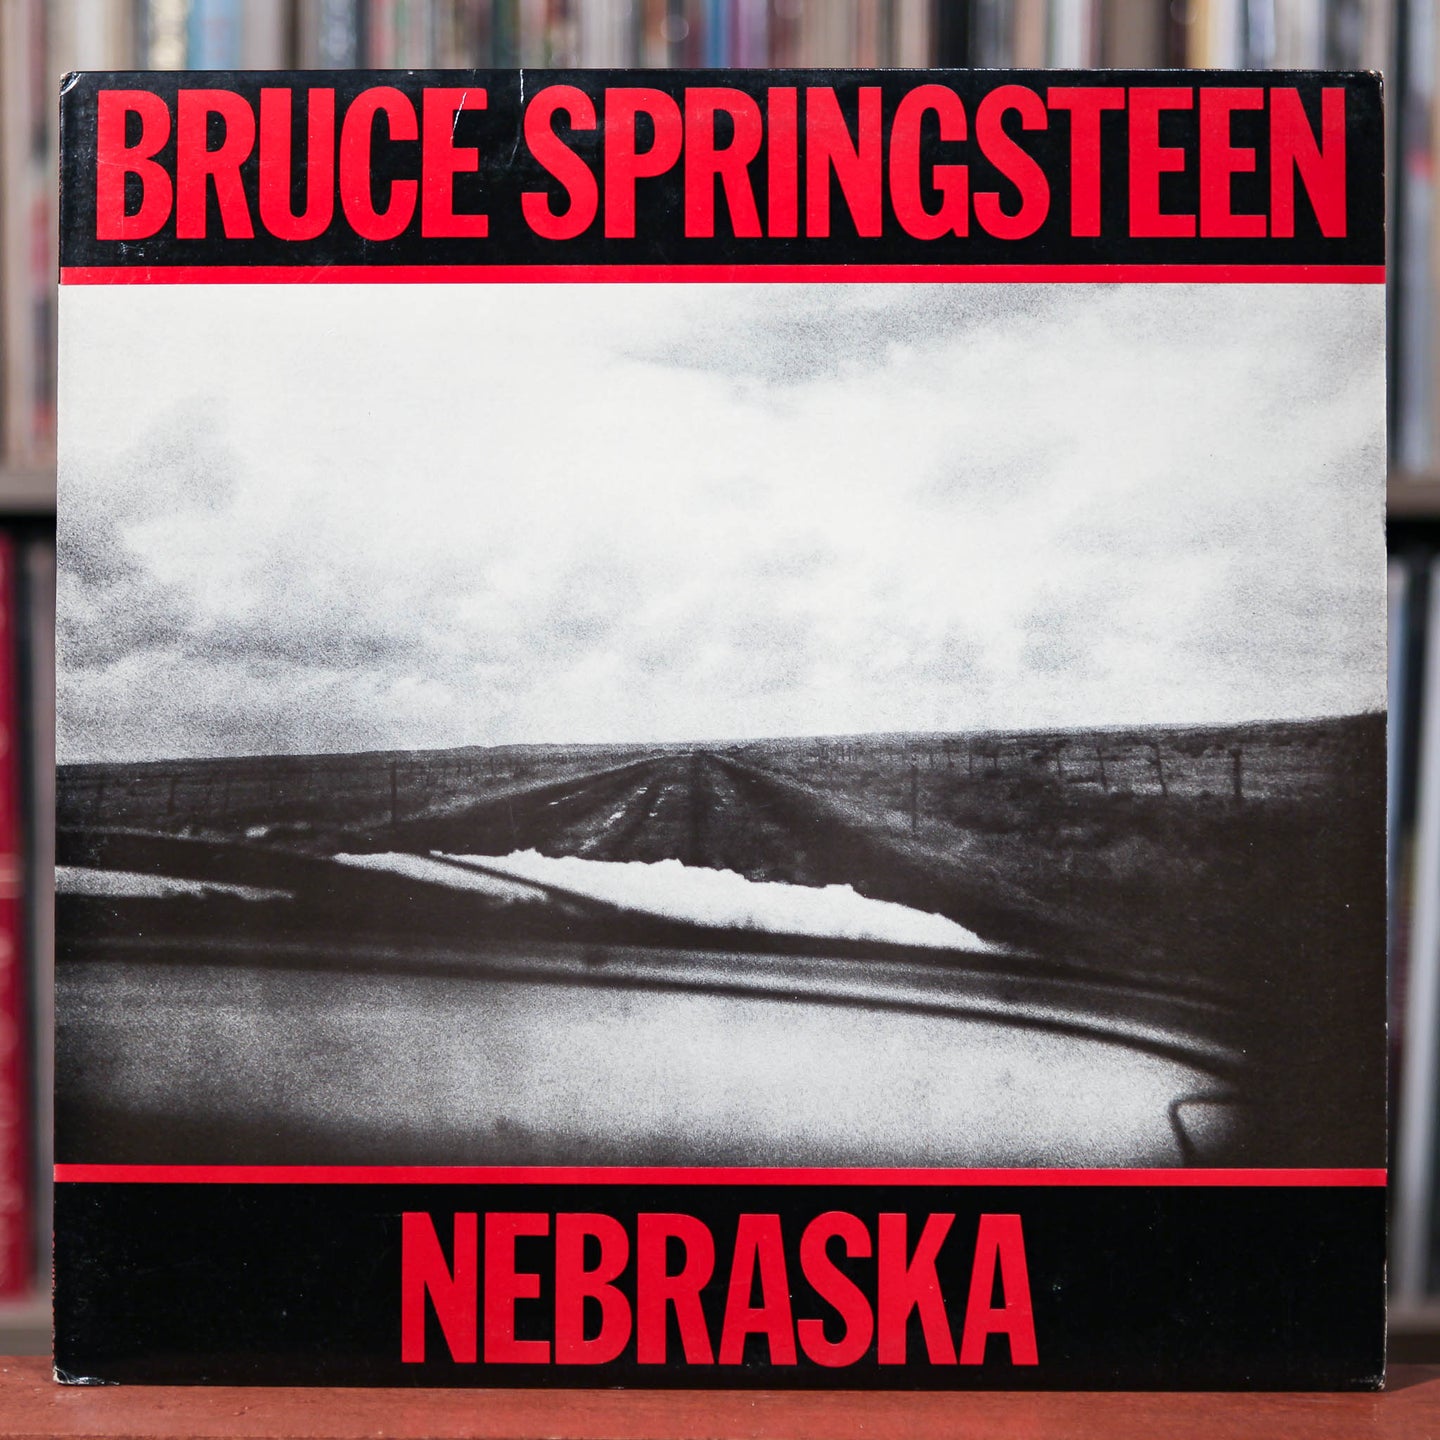 Bruce Springsteen - Nebraska  - 1982 CBS, VG++/VG+